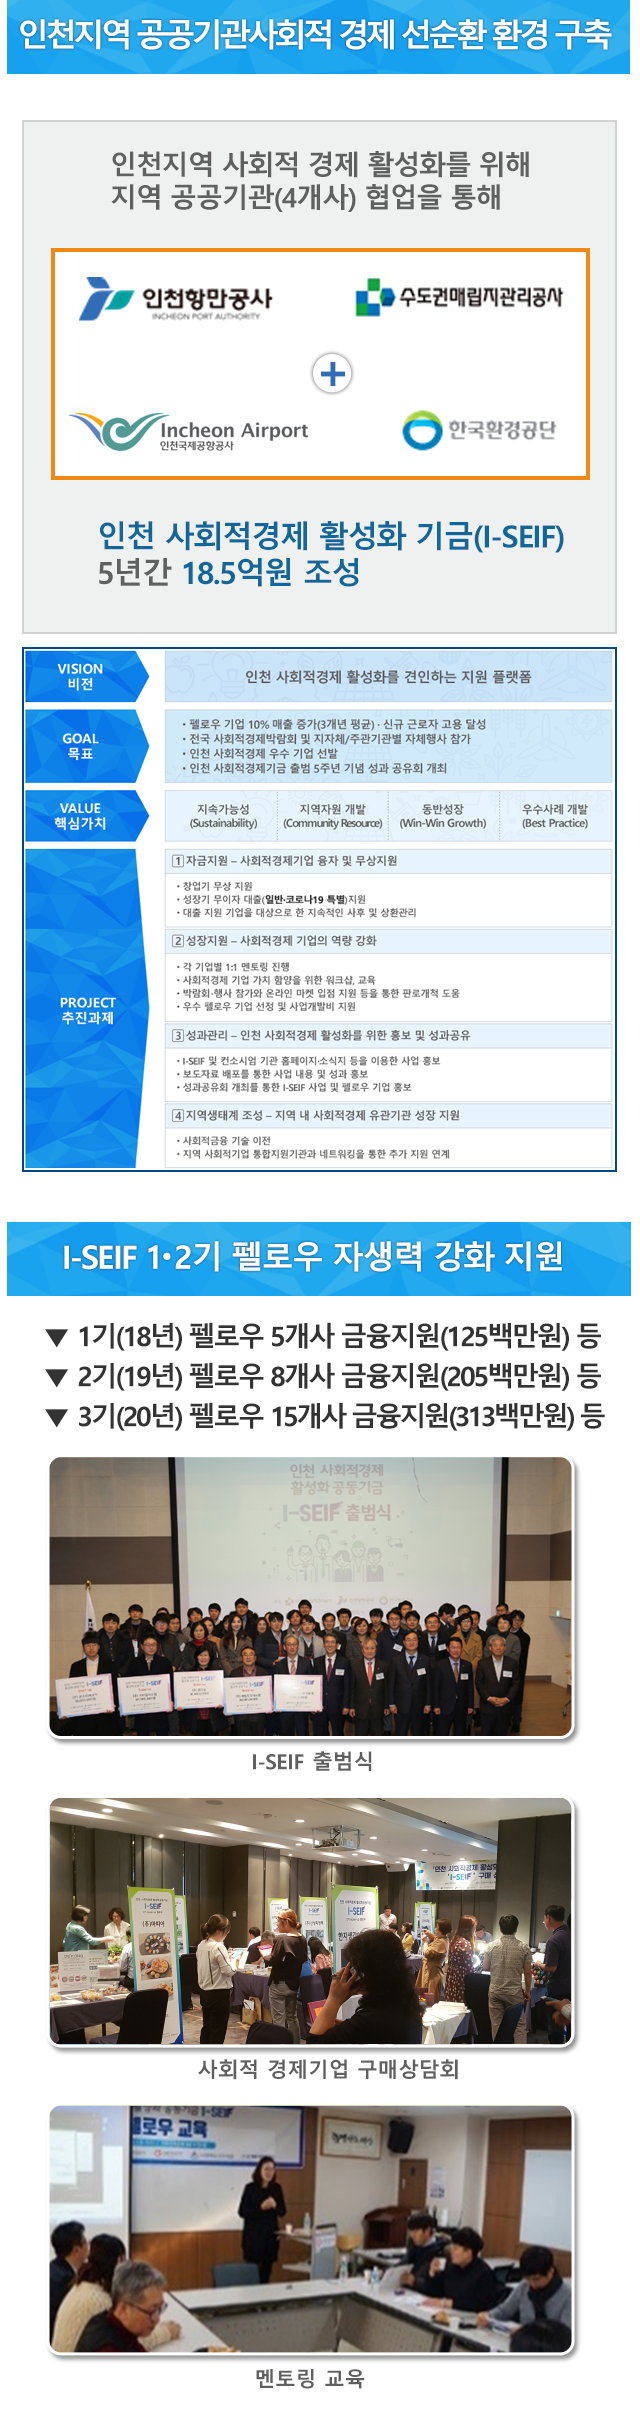 인천 사회적경제 활성화 기금(I-SEIF) 18.5억원 조성. 자세한 설명은 아래를 참고하세요